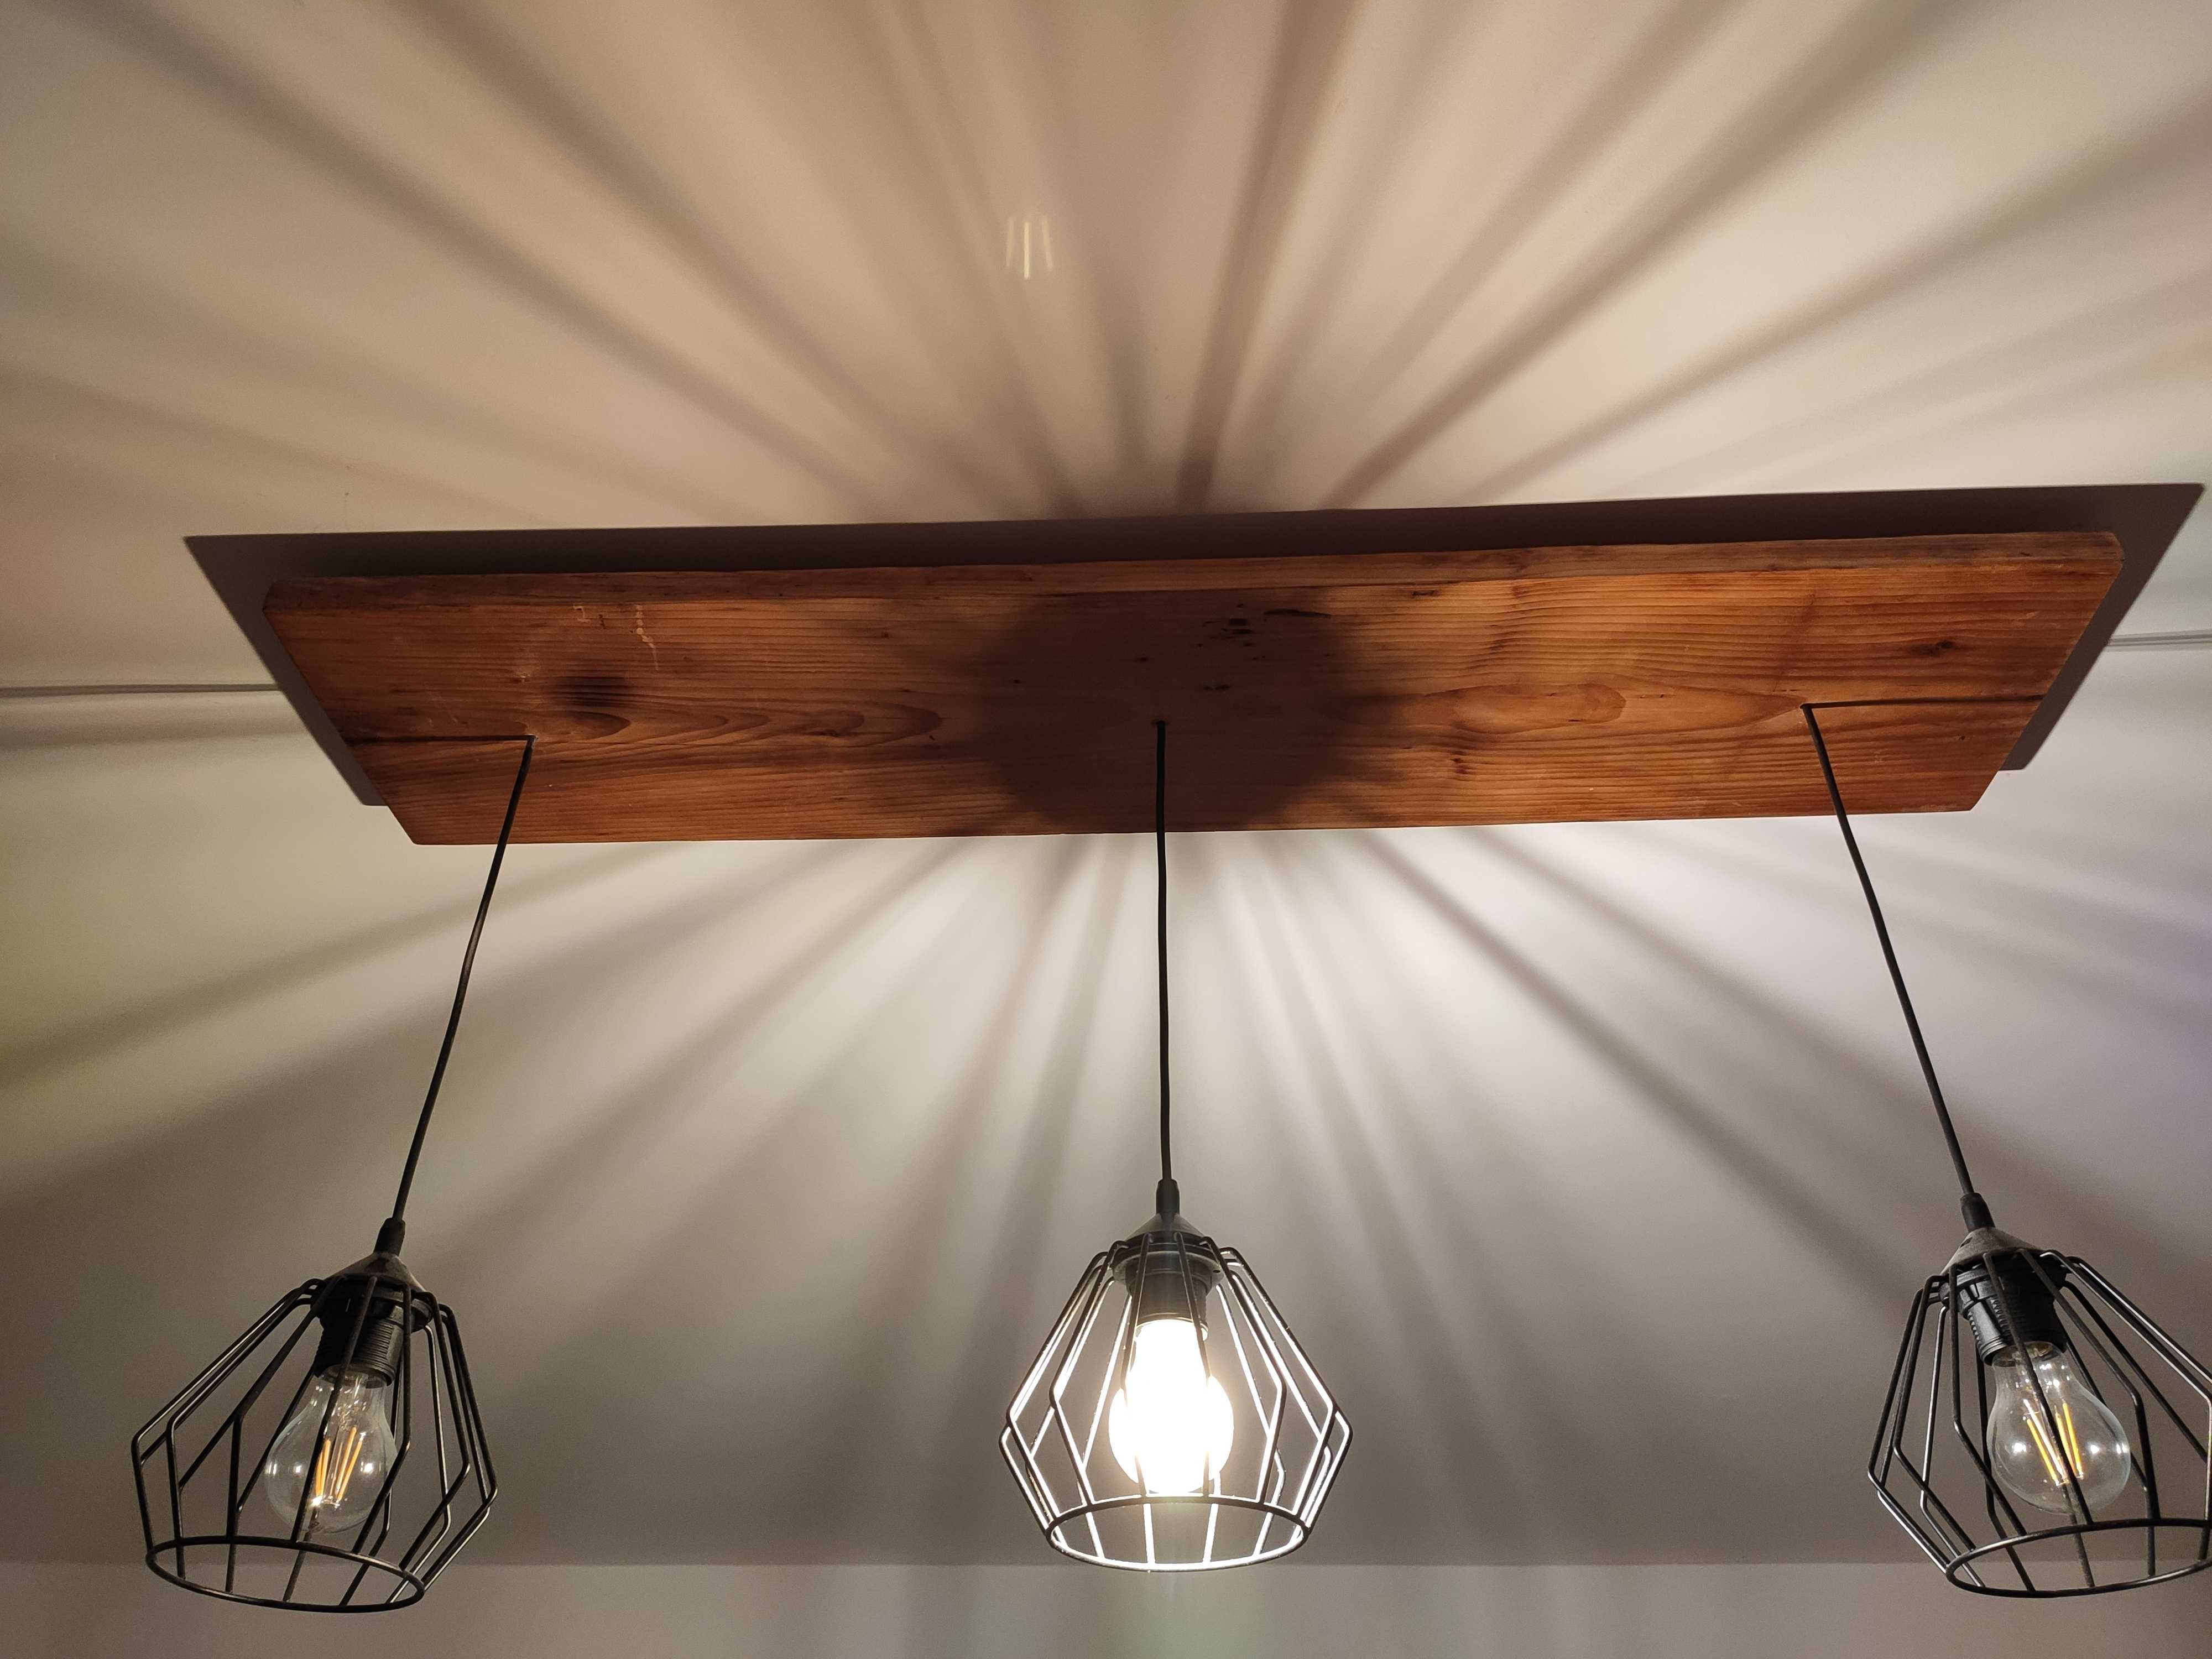 Lampa loft industrial oświetlenie żyrandol loftowy deska rustykalna